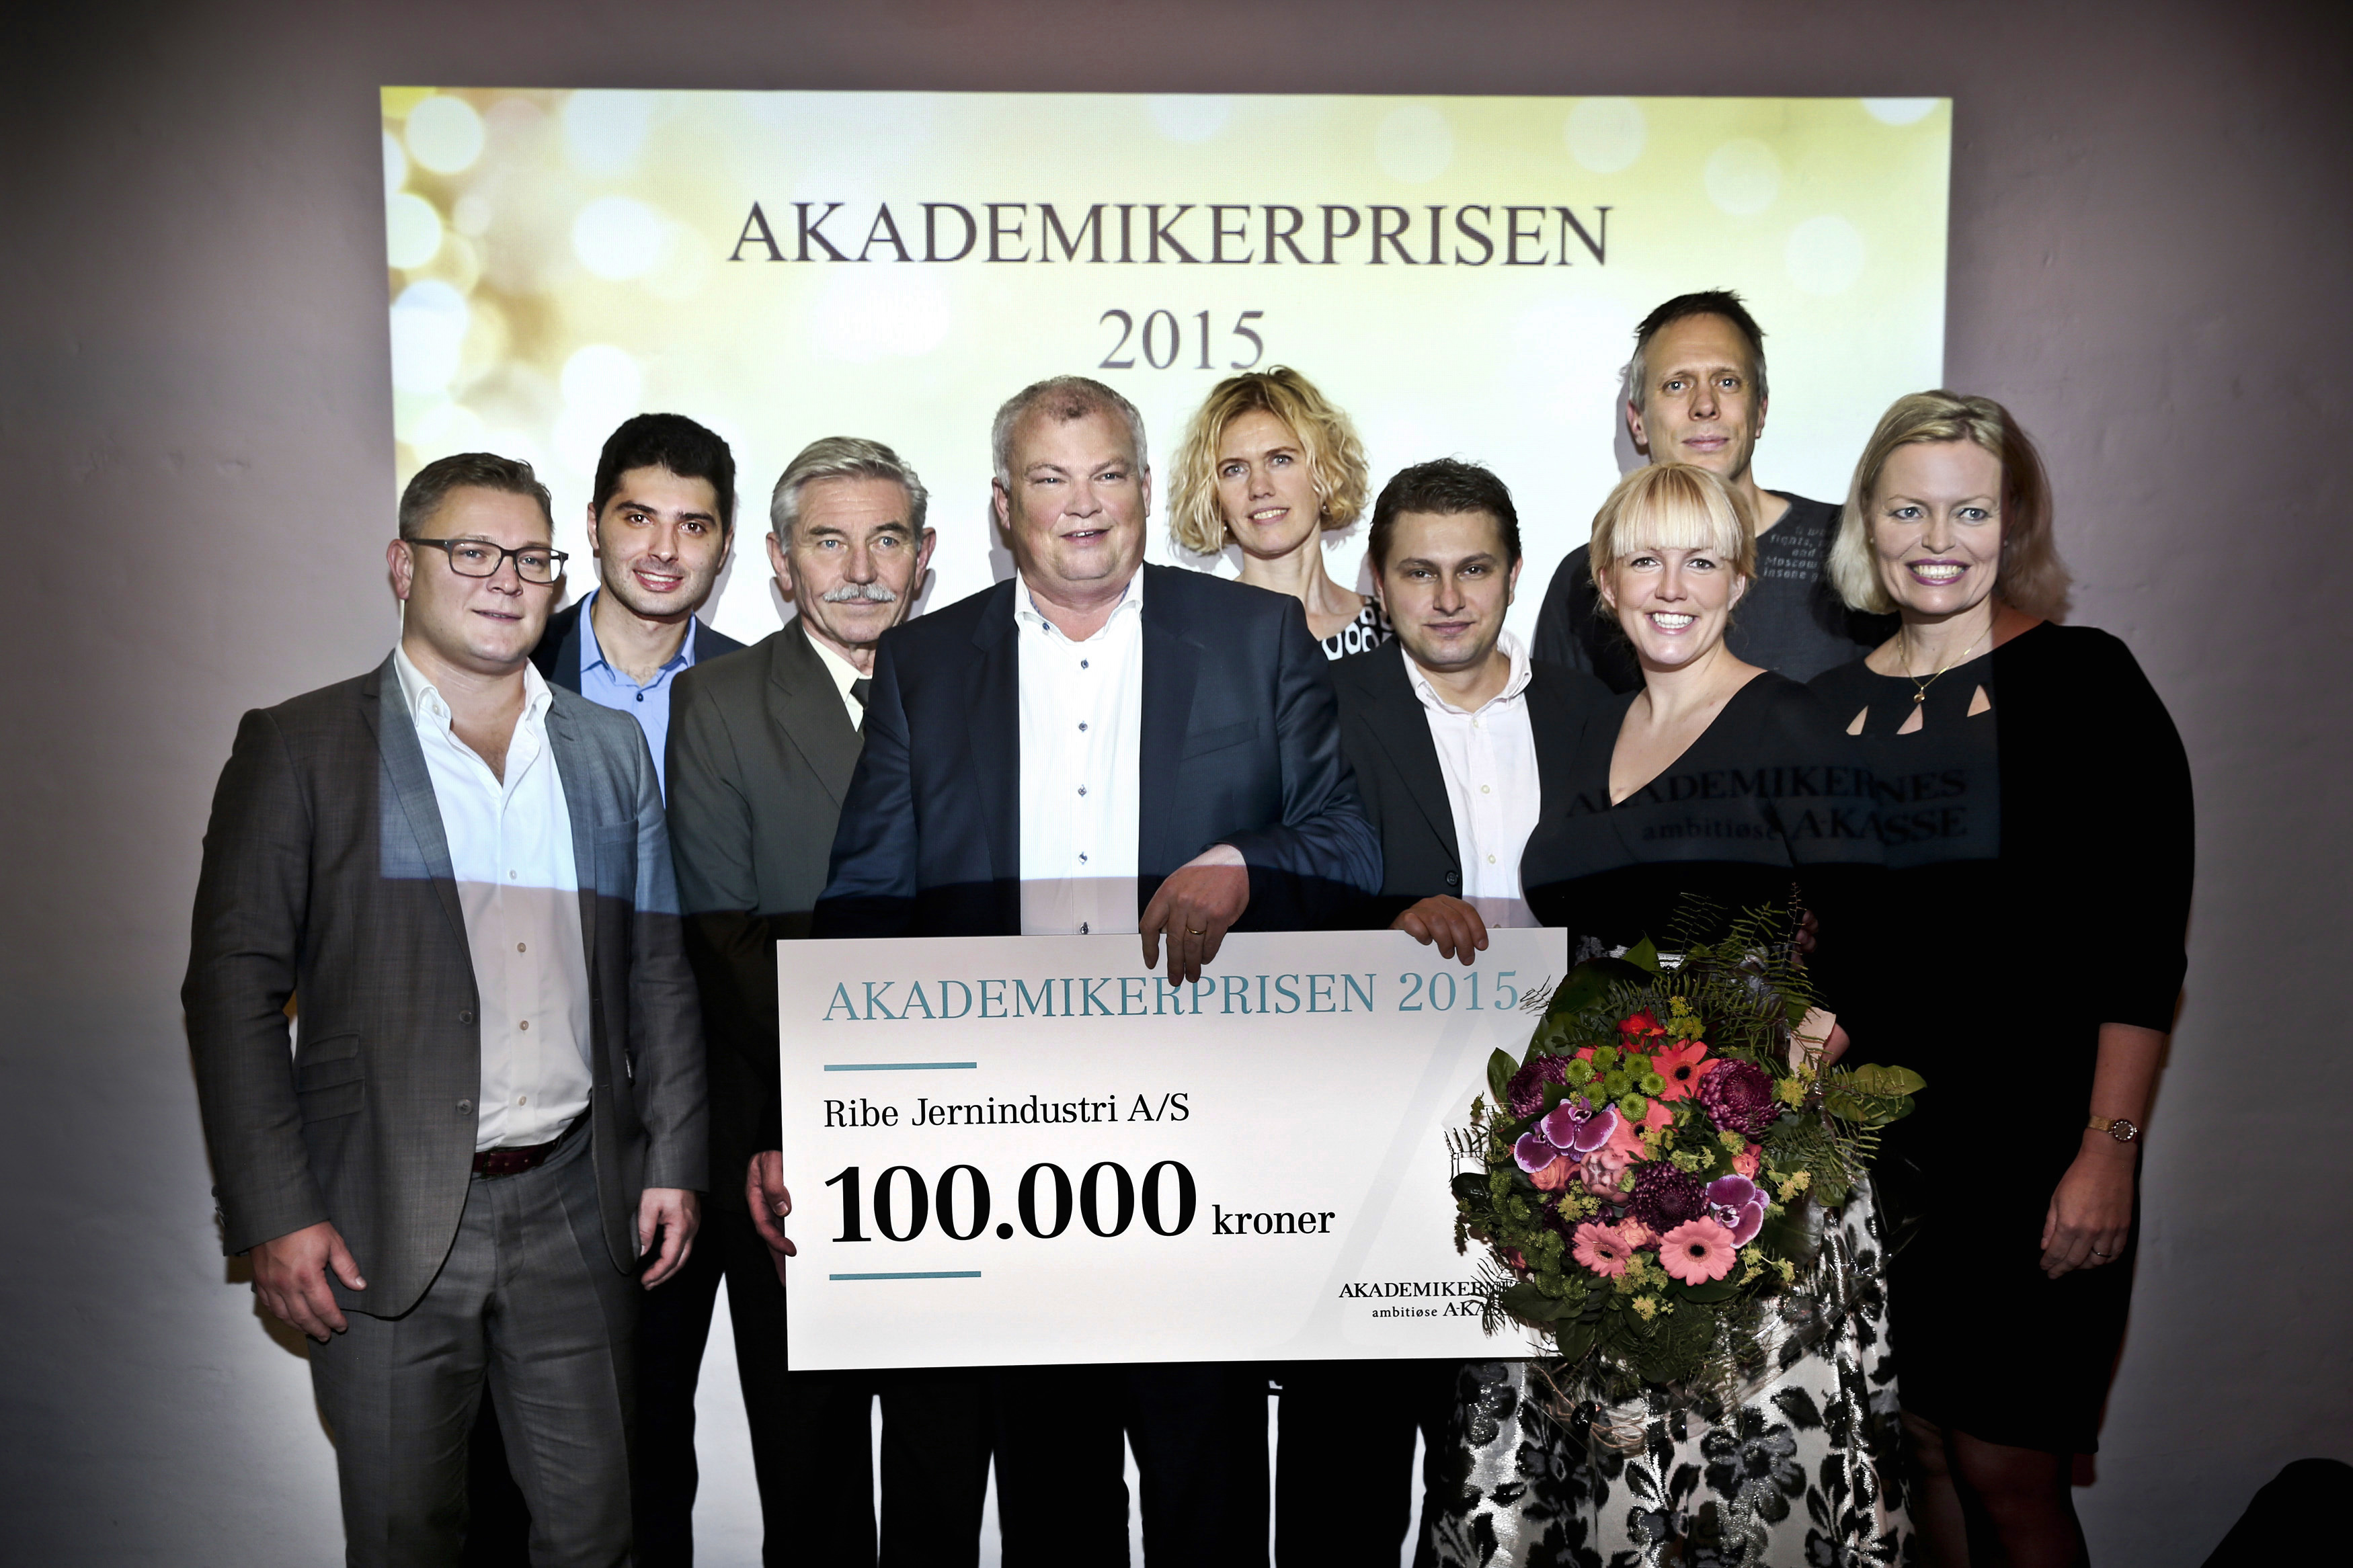 Billede af vinderne af Akademikerprisen 2015 - Ribe Jernindustri